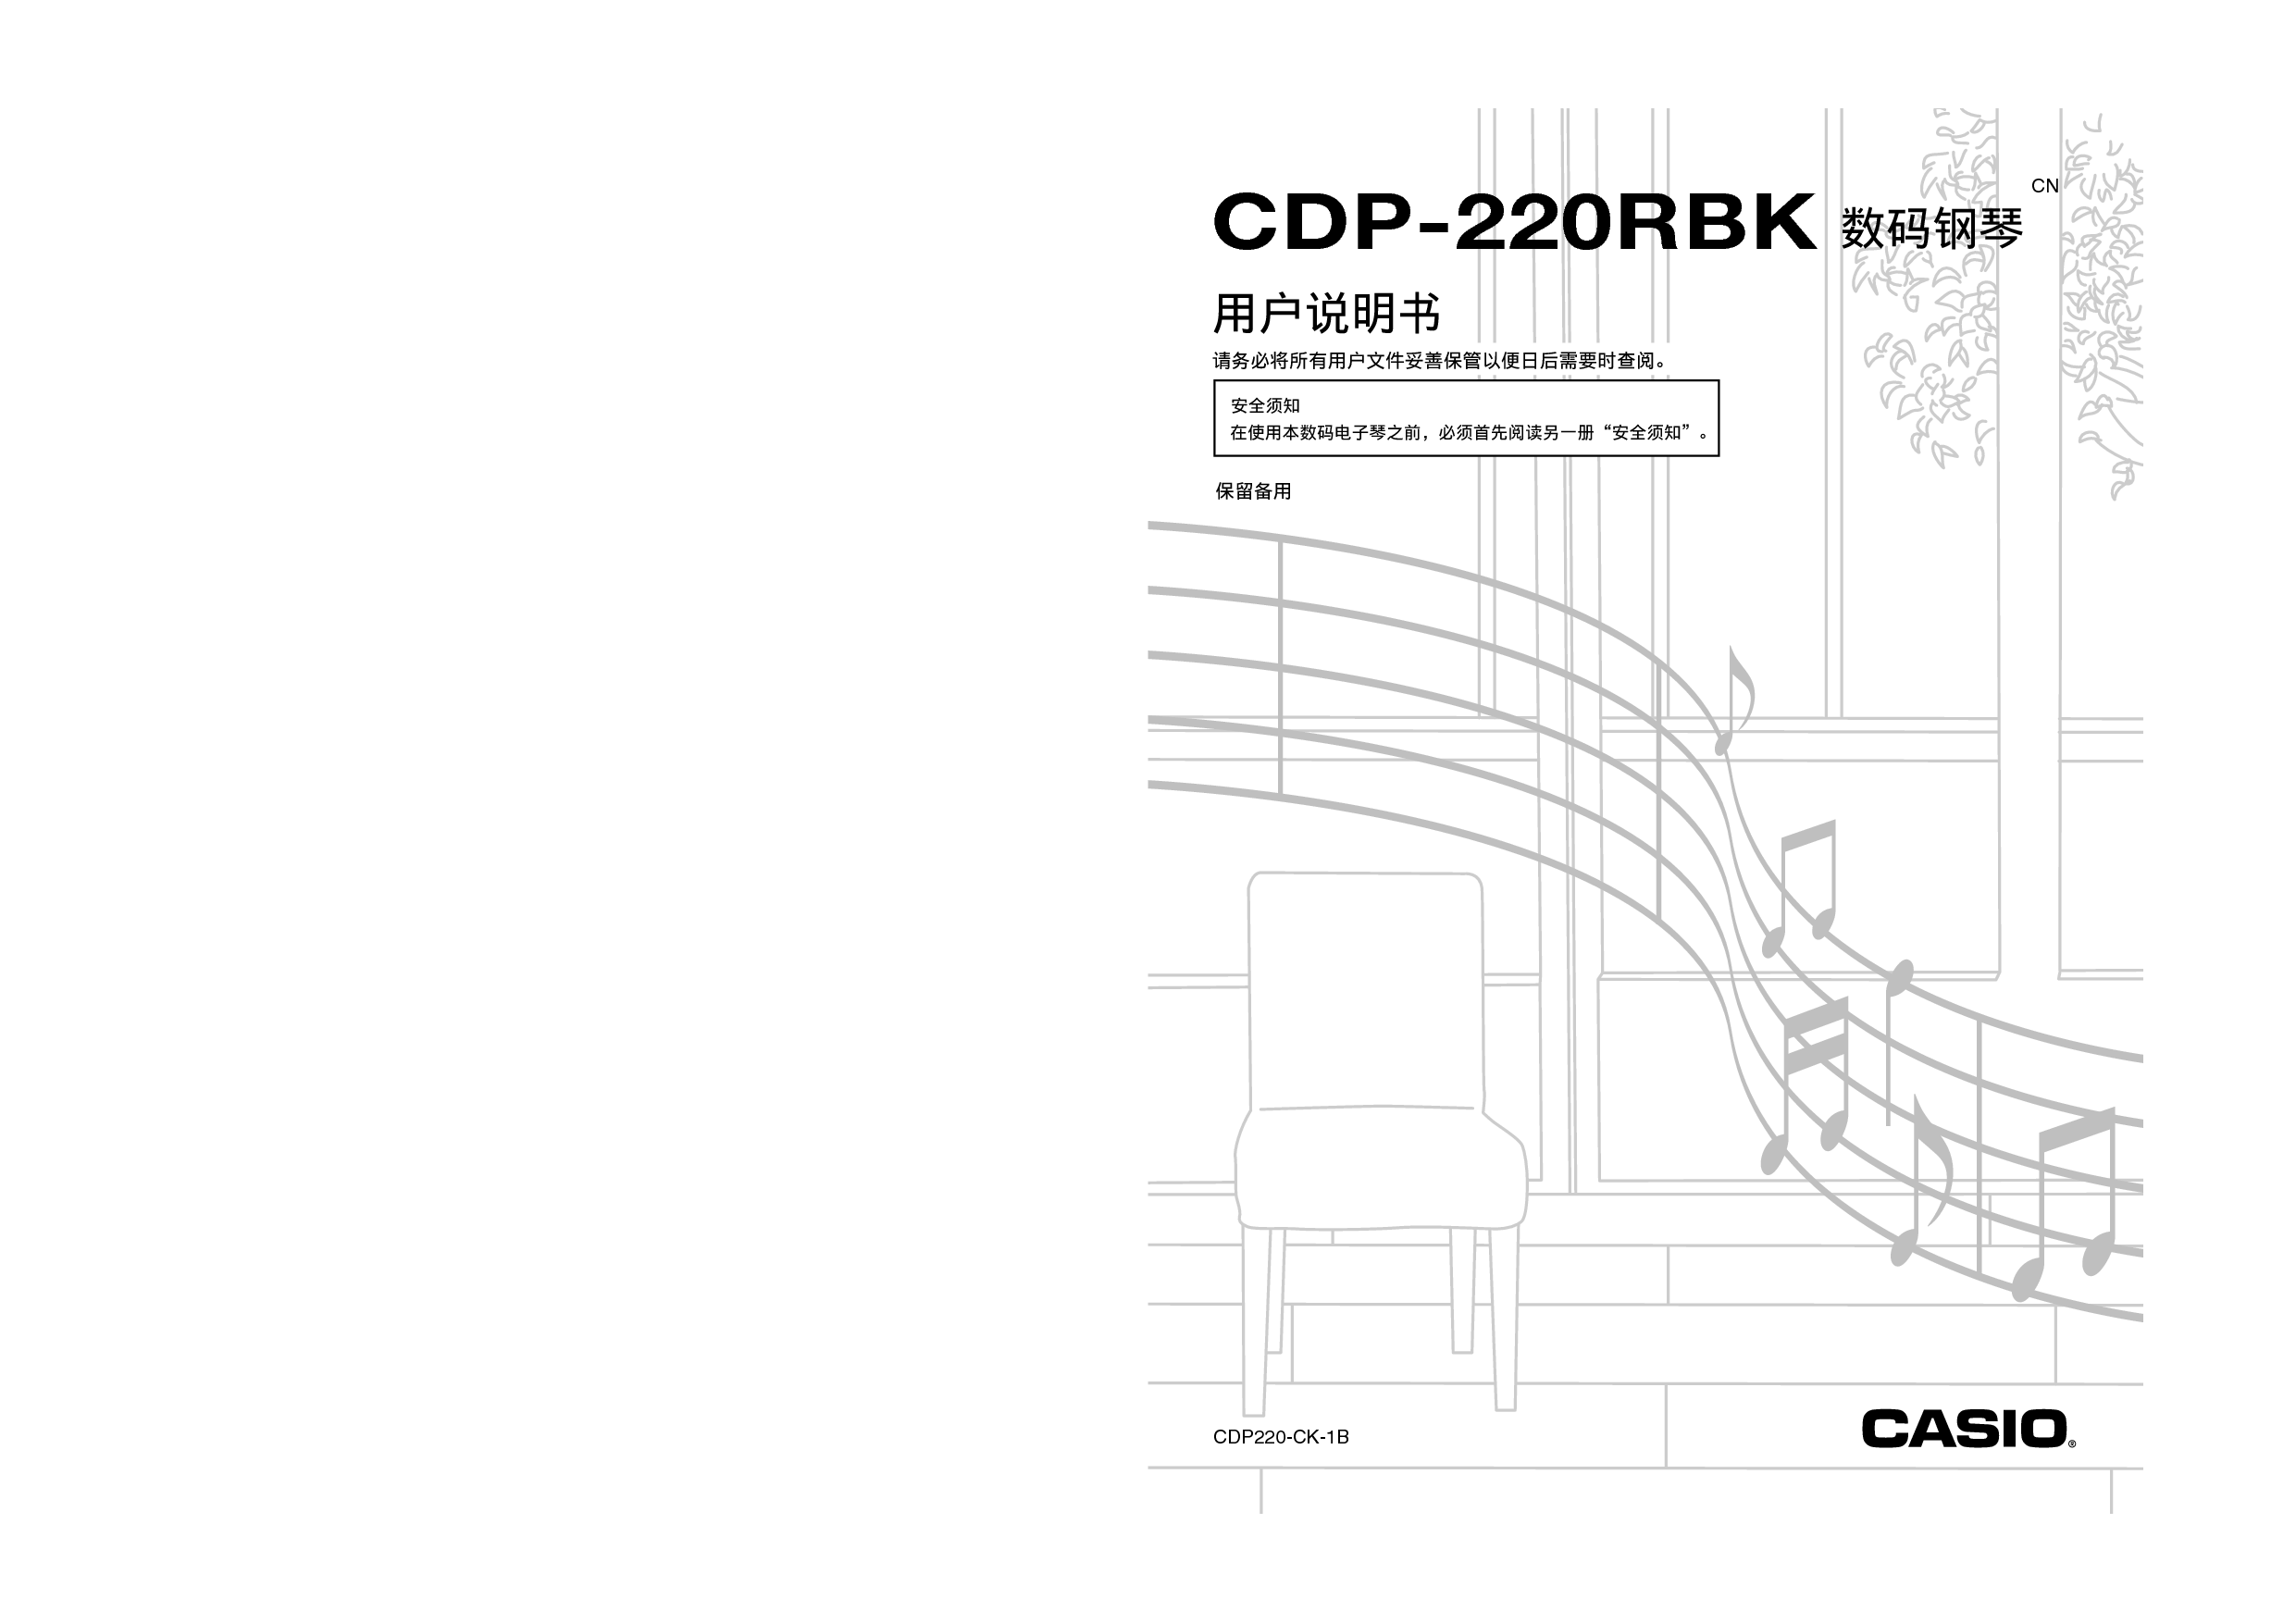 卡西欧 Casio CDP-220RBK 使用说明书 封面